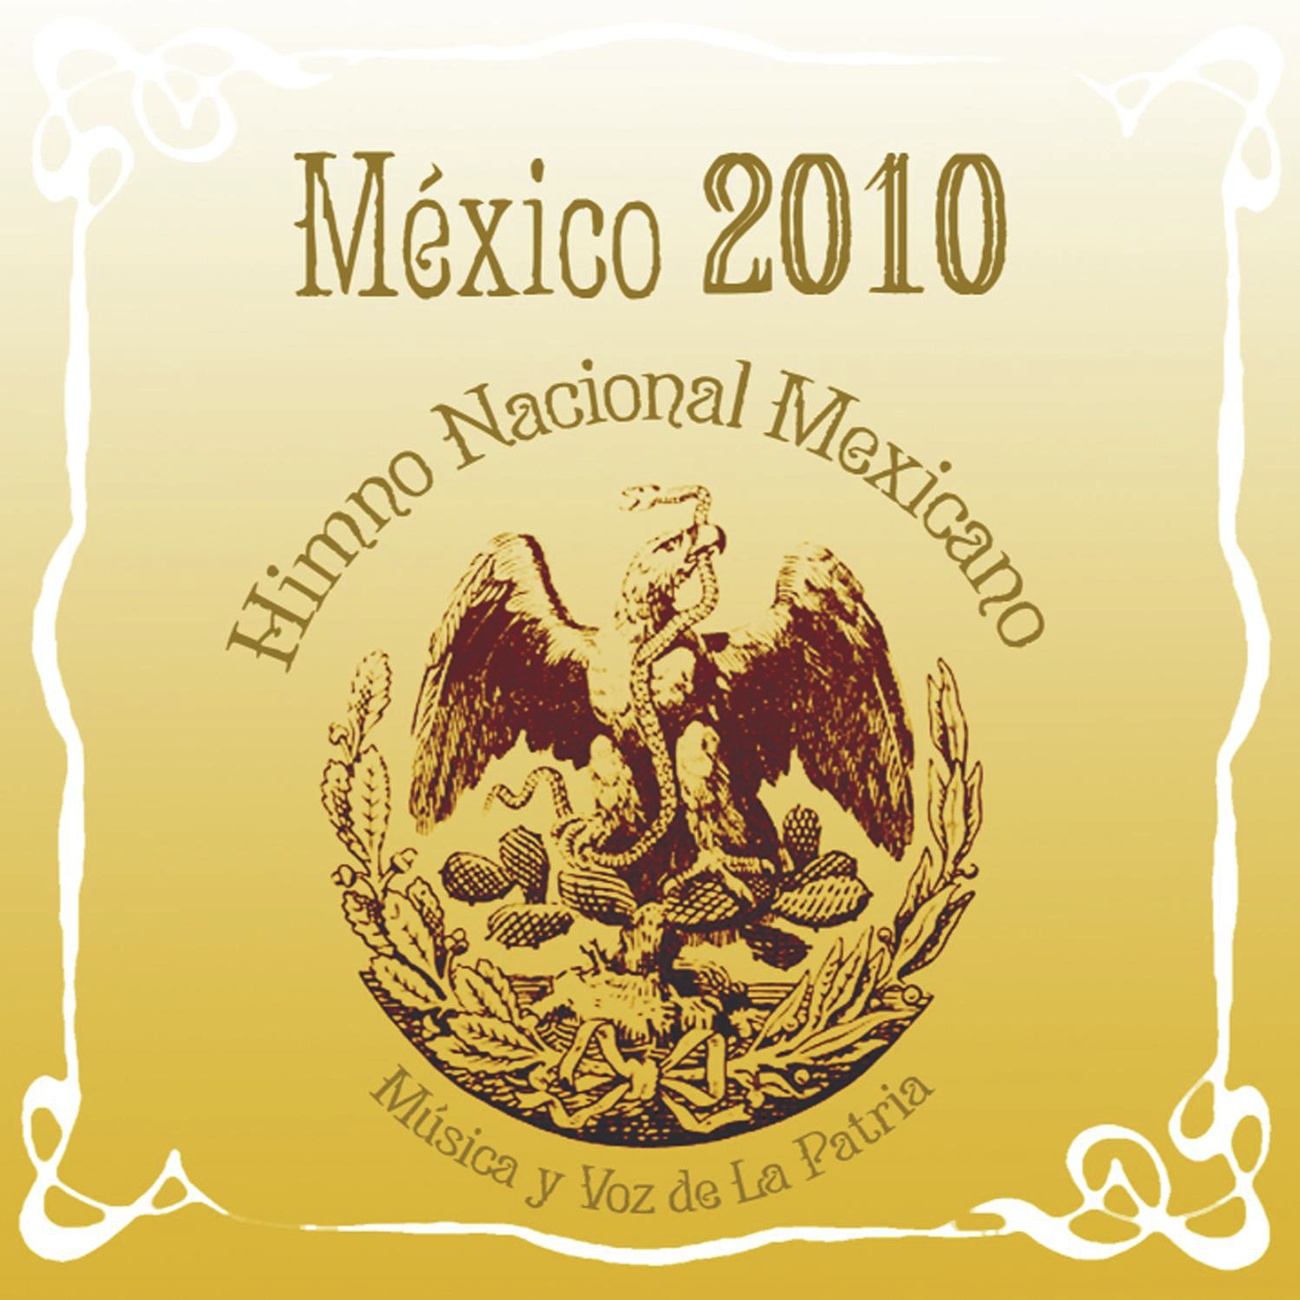 Me xico 2010 Himno Nacional Mexicano Mu sica Y Voz De La Patria